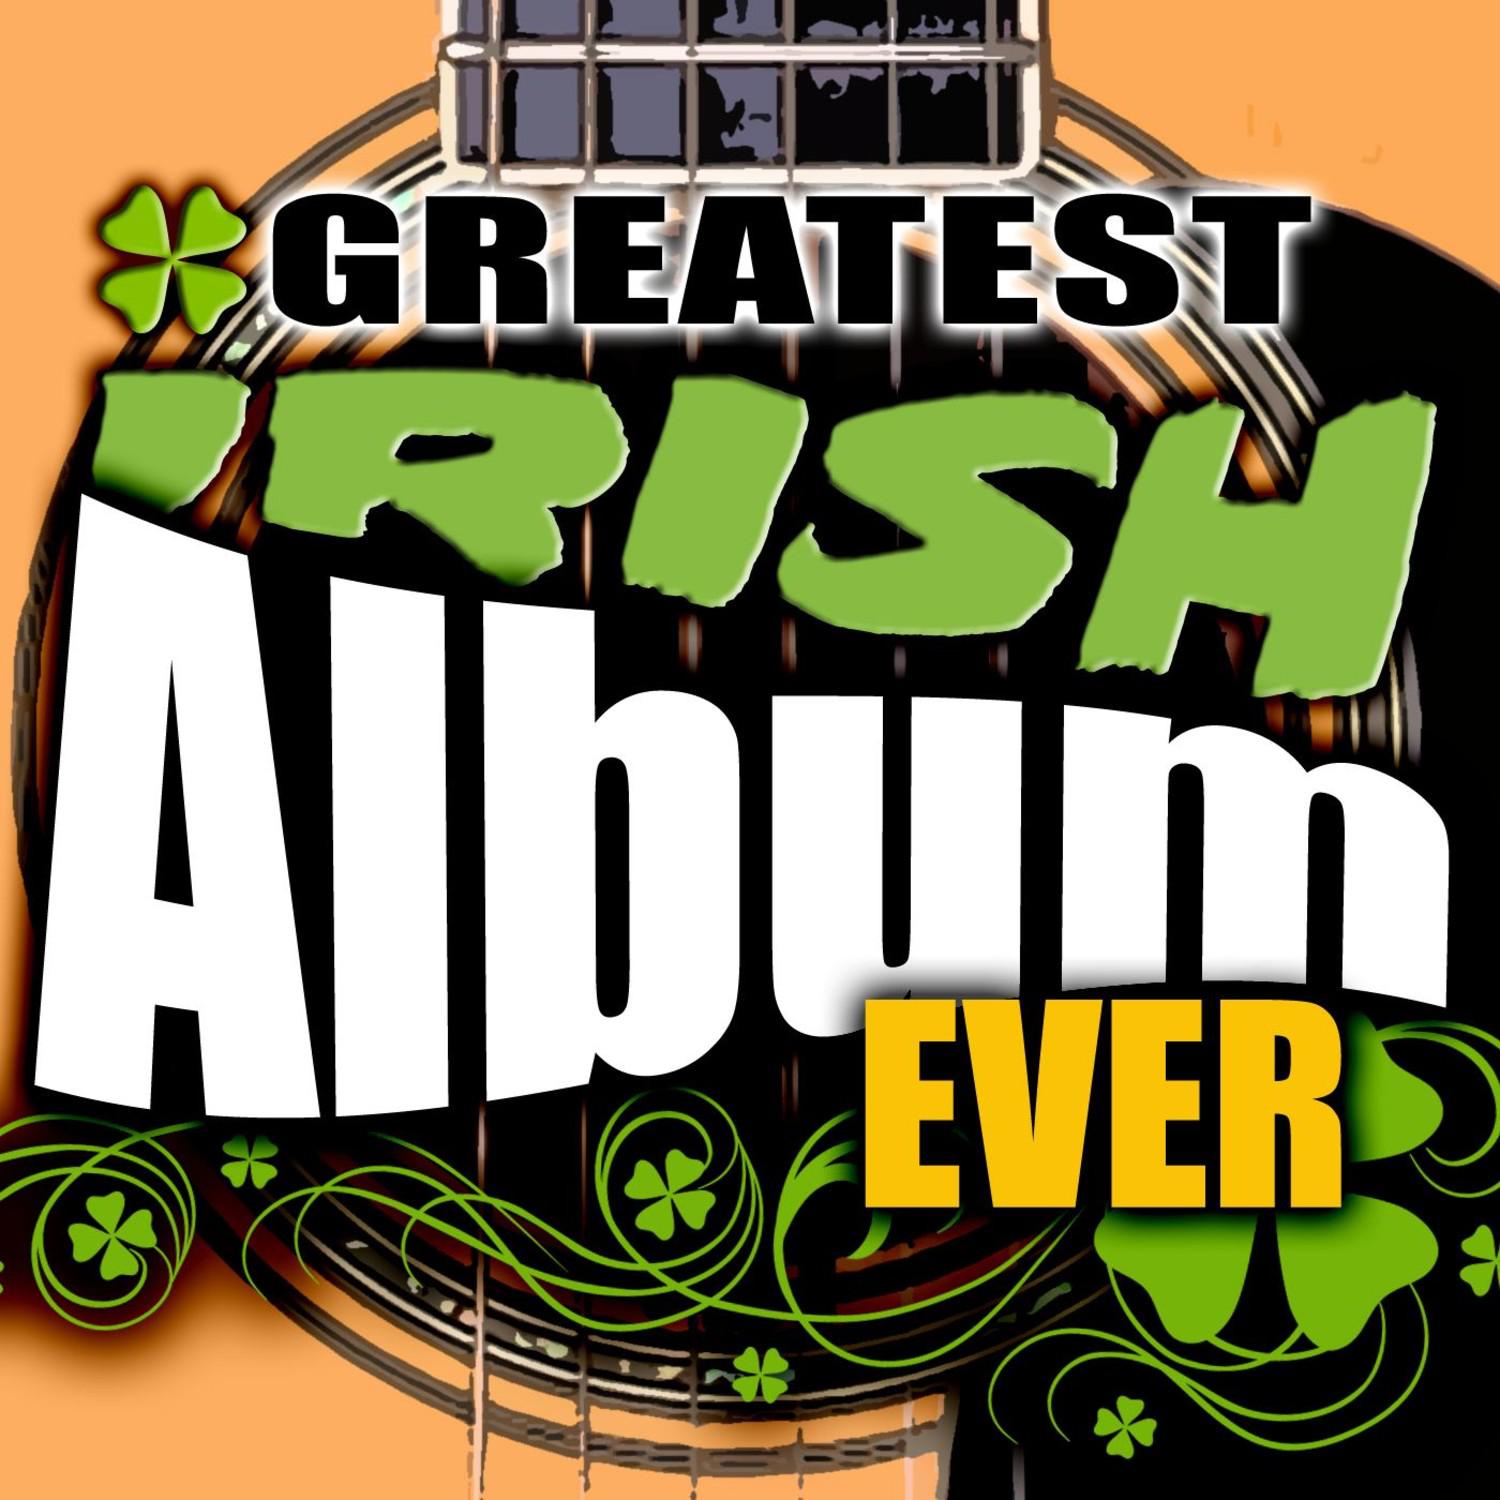 The Greatest Irish Album Ever